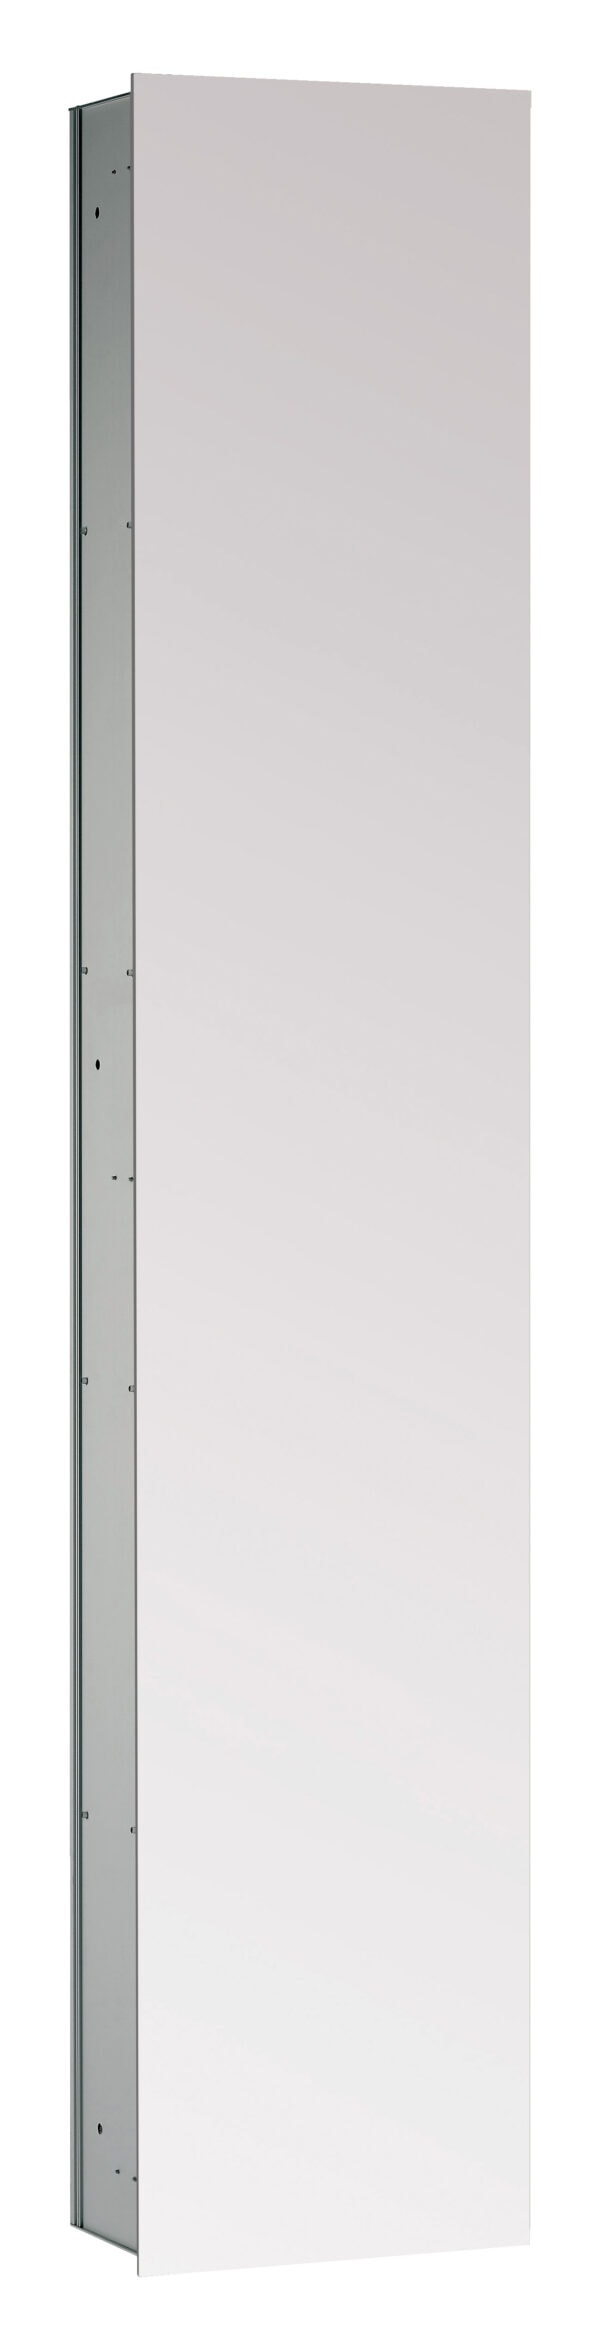 emco asis 2.0 Cabinet module with mirrored-door - built-in model